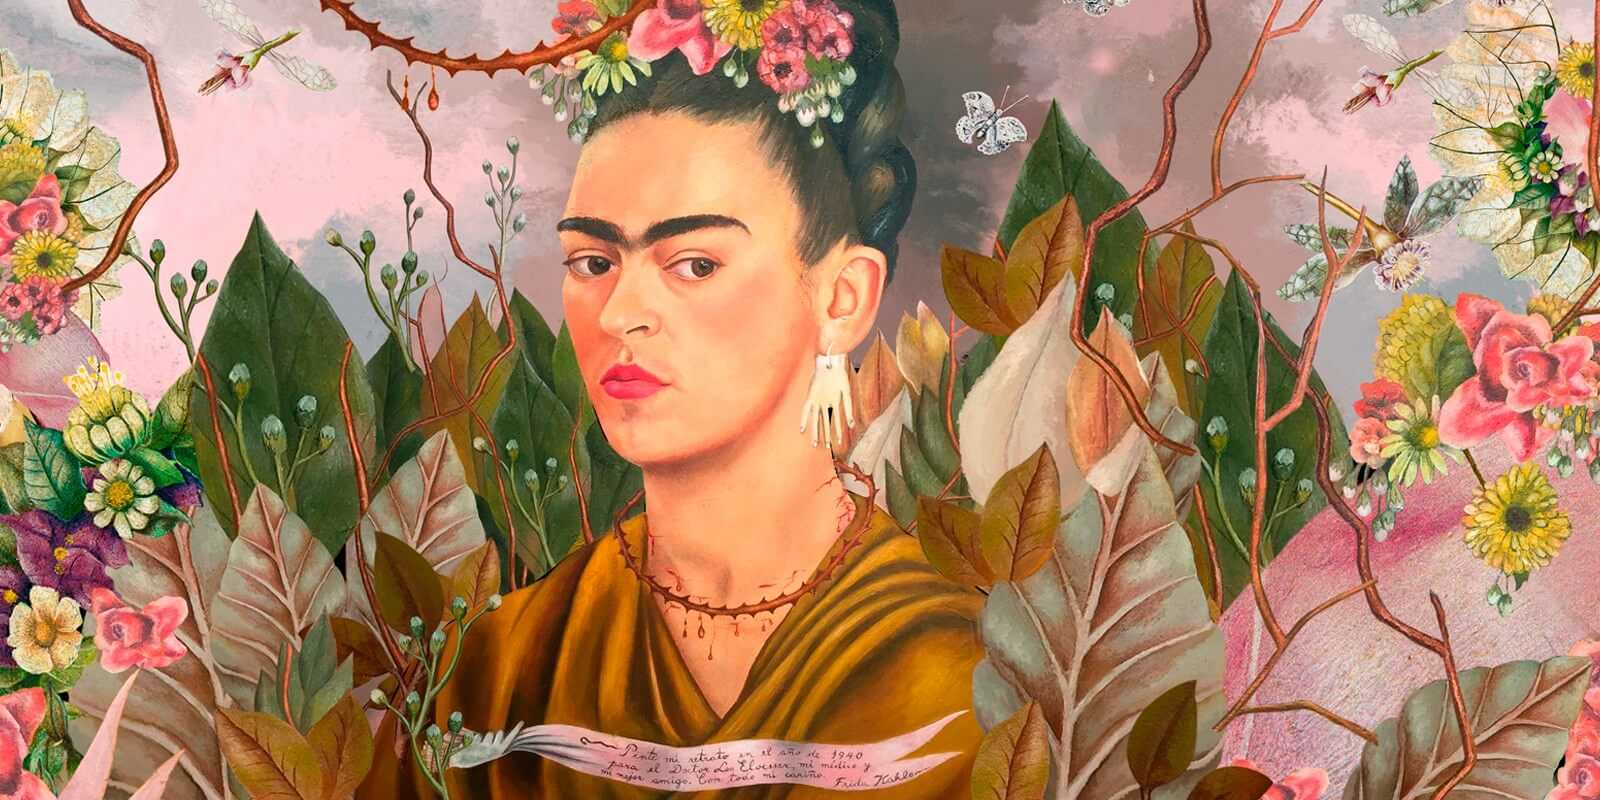 Por que murió frida kahlo